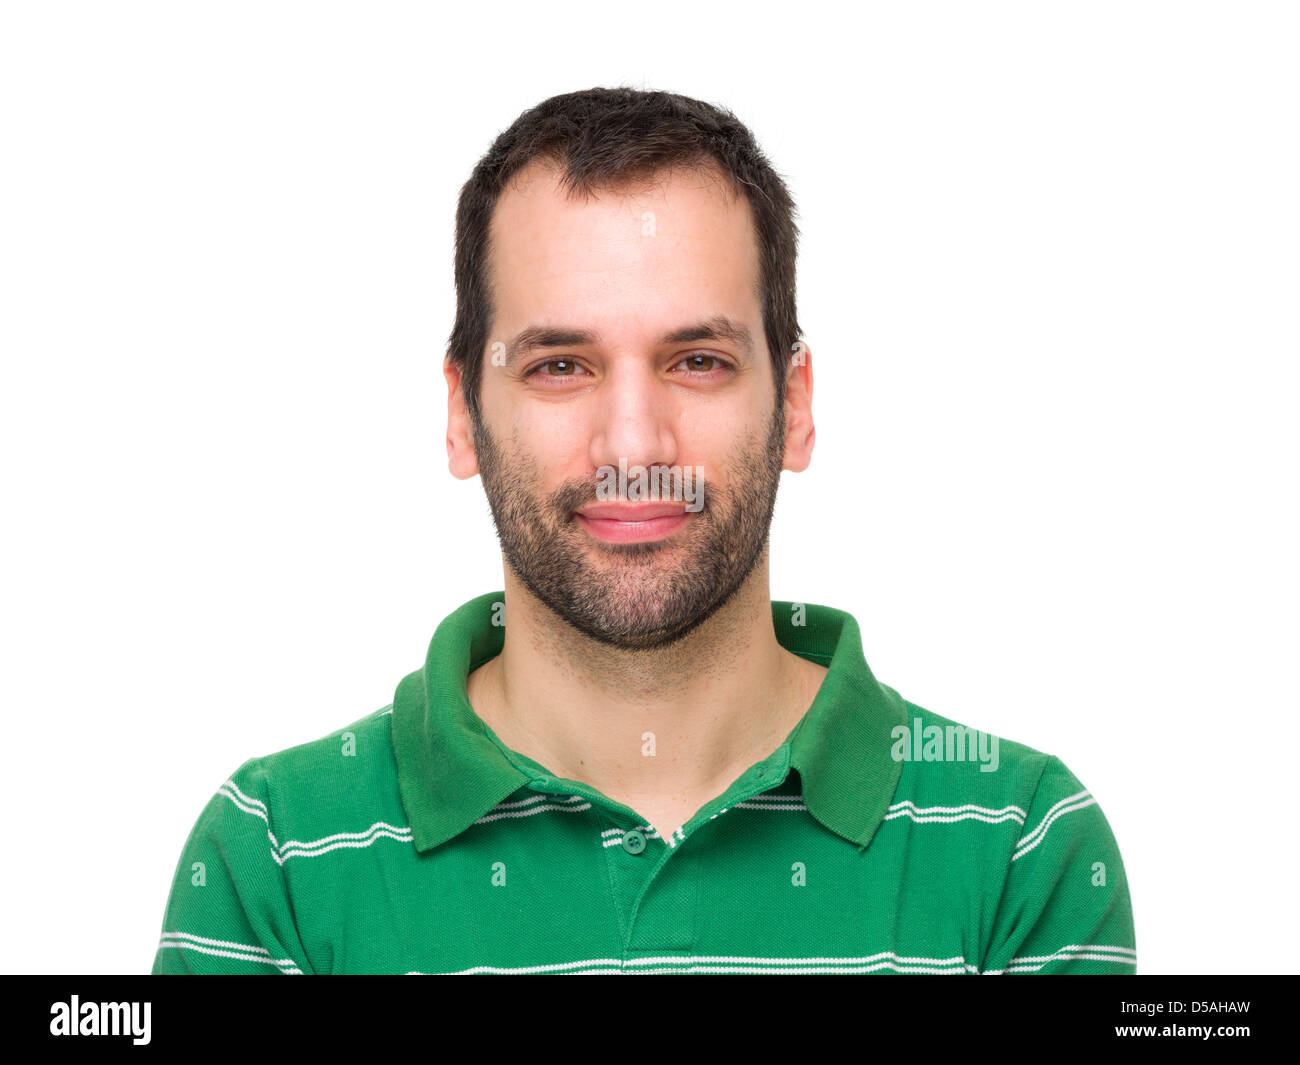 Retrato de un joven con barba de 3 días hombre sonriente vistiendo una camisa de polo a rayas verde Foto de stock